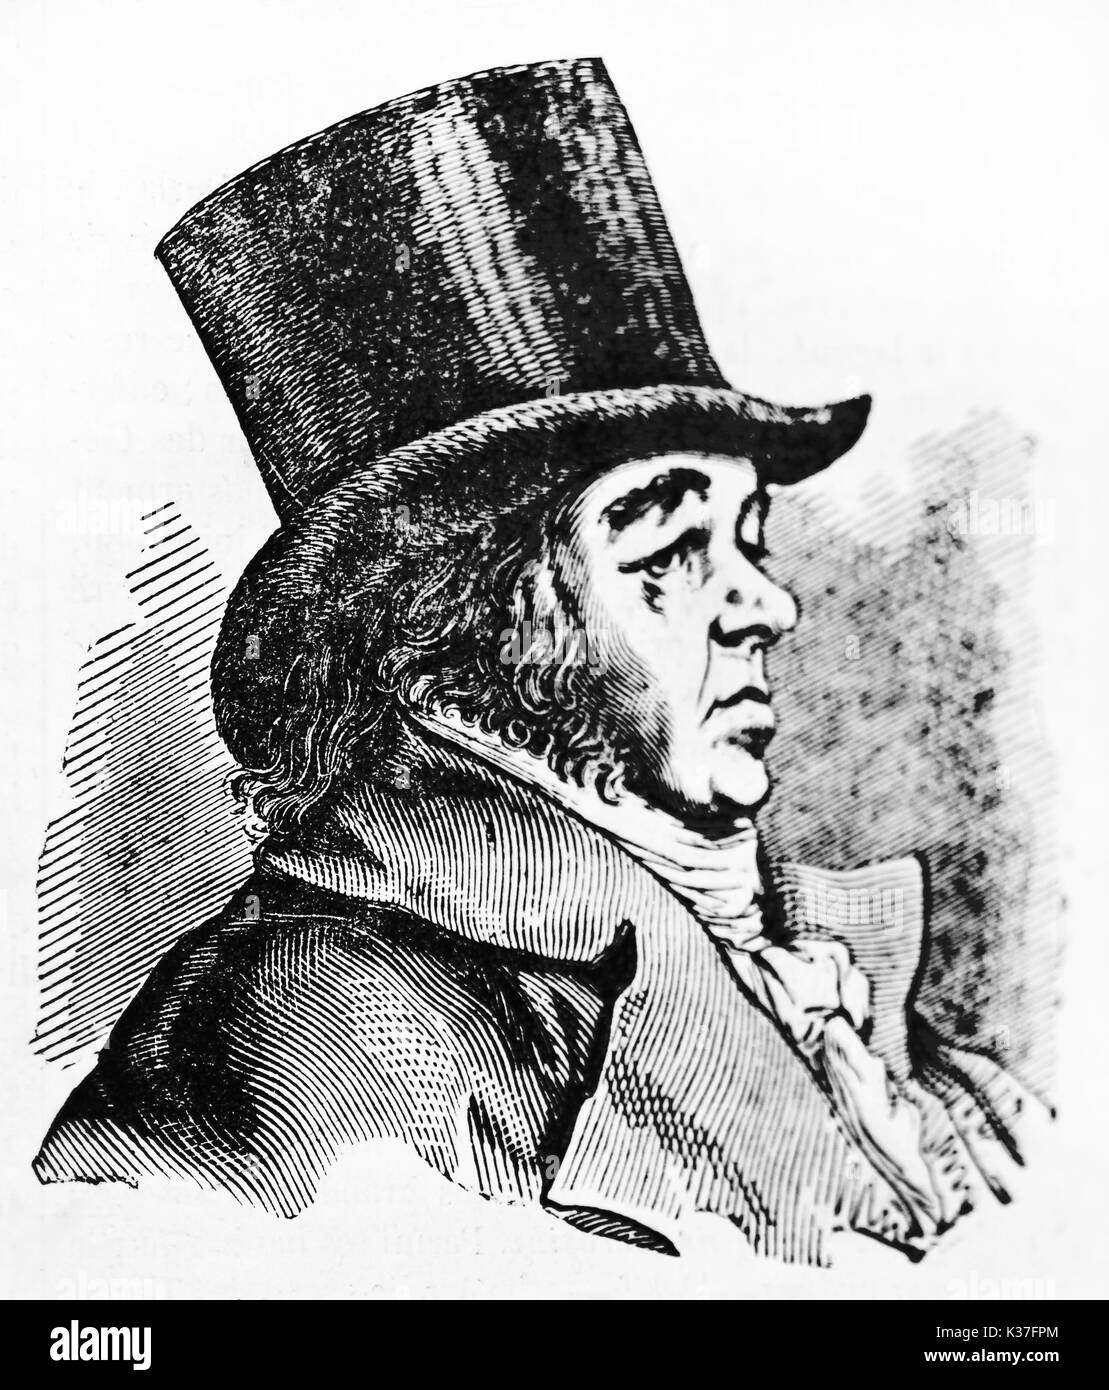 Antica vista laterale ritratto di Francisco Goya (1746 - 1828), spagnolo pittore romantico, raffigurato sul suo profilo indossando un cappello a cilindro. Da autore non identificato pubblicato il Magasin pittoresco Parigi 1834 Foto Stock